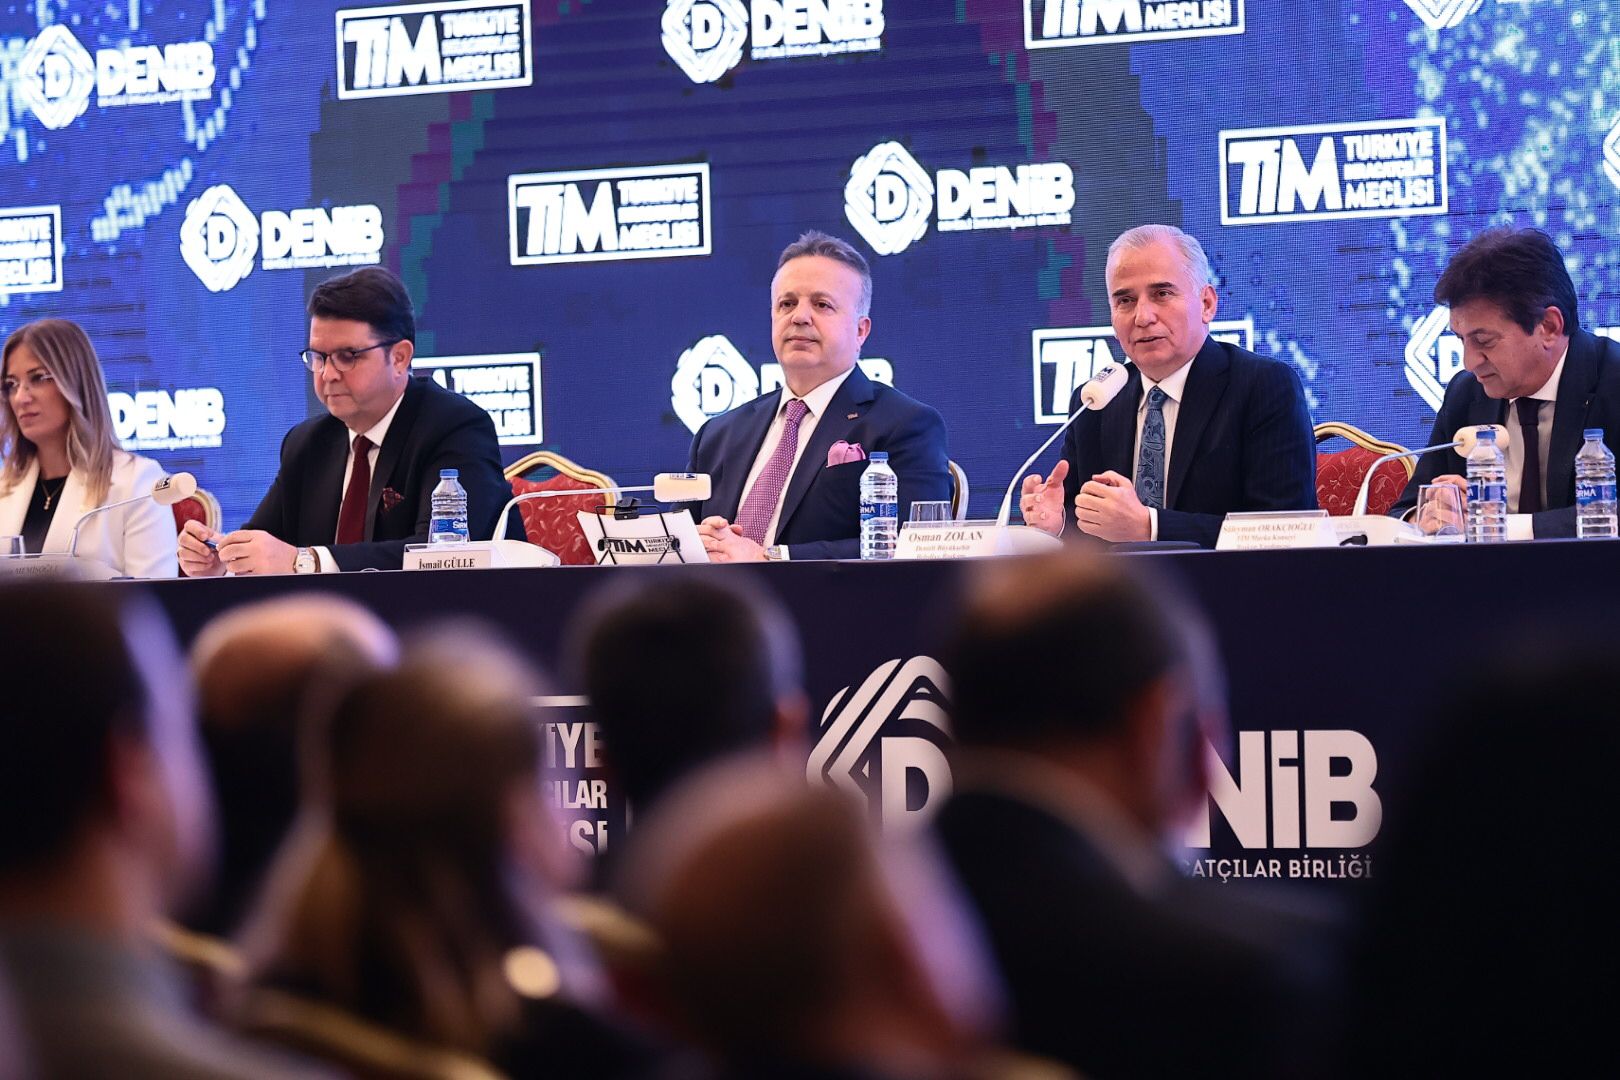 Türkiye İhracatçılar Meclisi (TİM) Başkanı İsmail Gülle